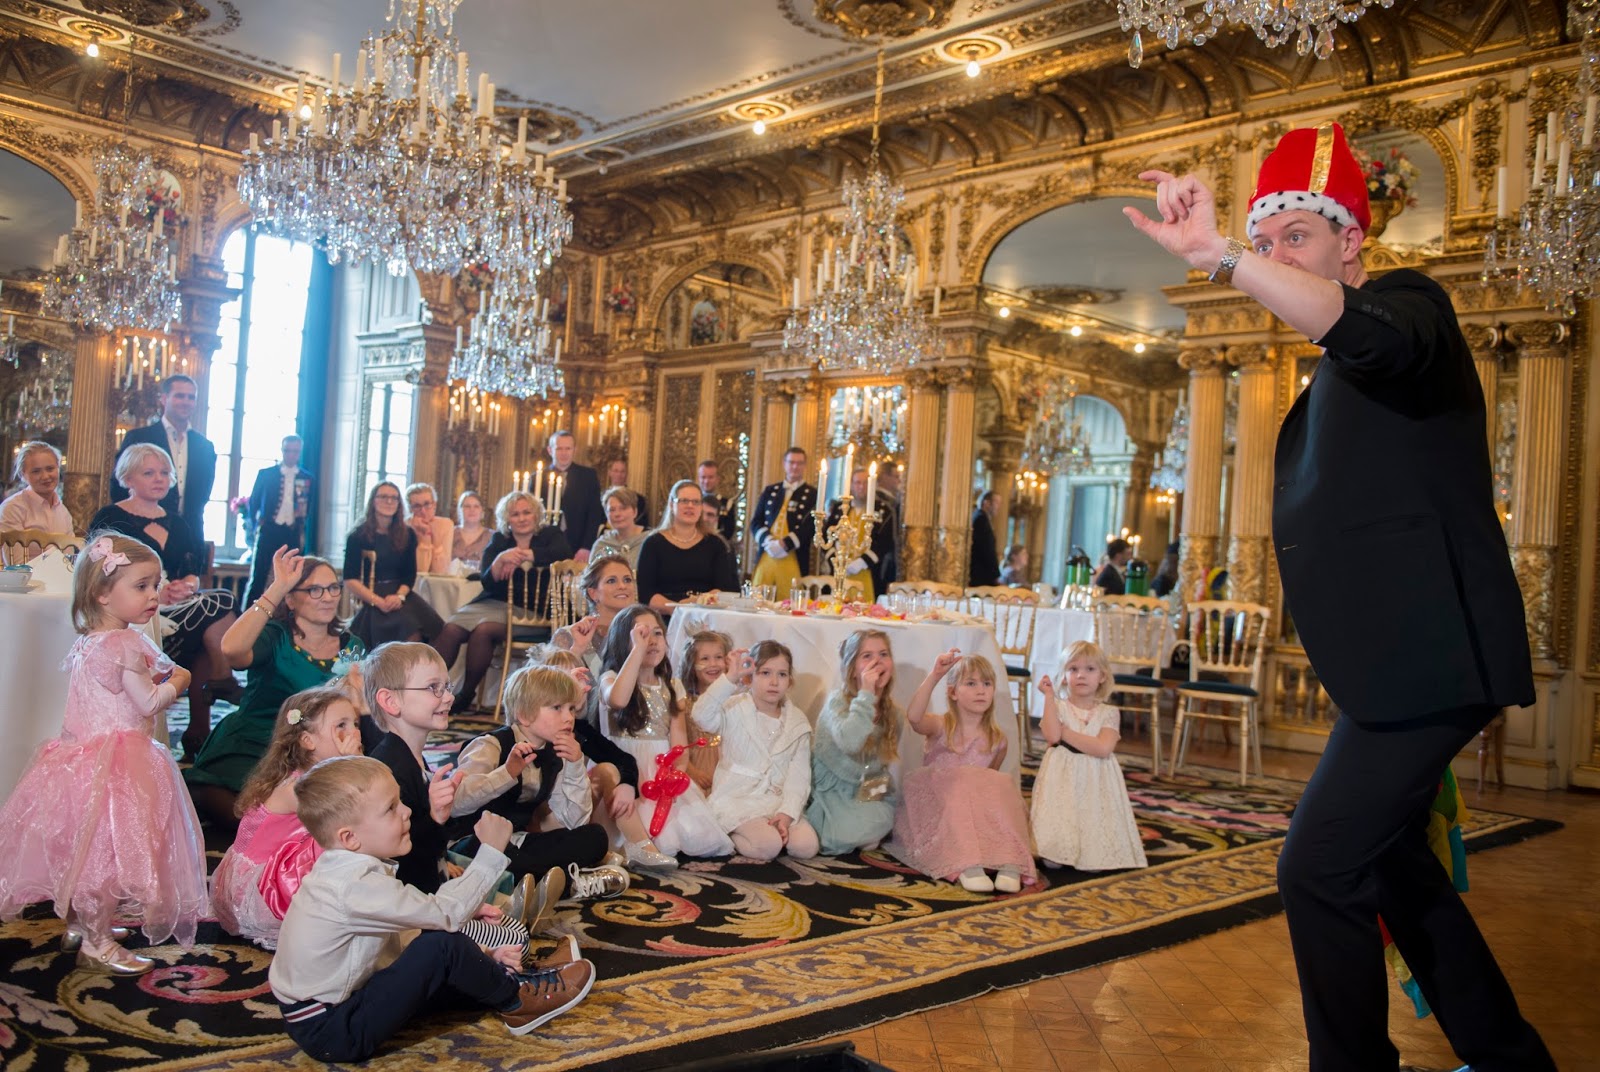 Royal Musings: A Princess Party at a palace with a real Princess